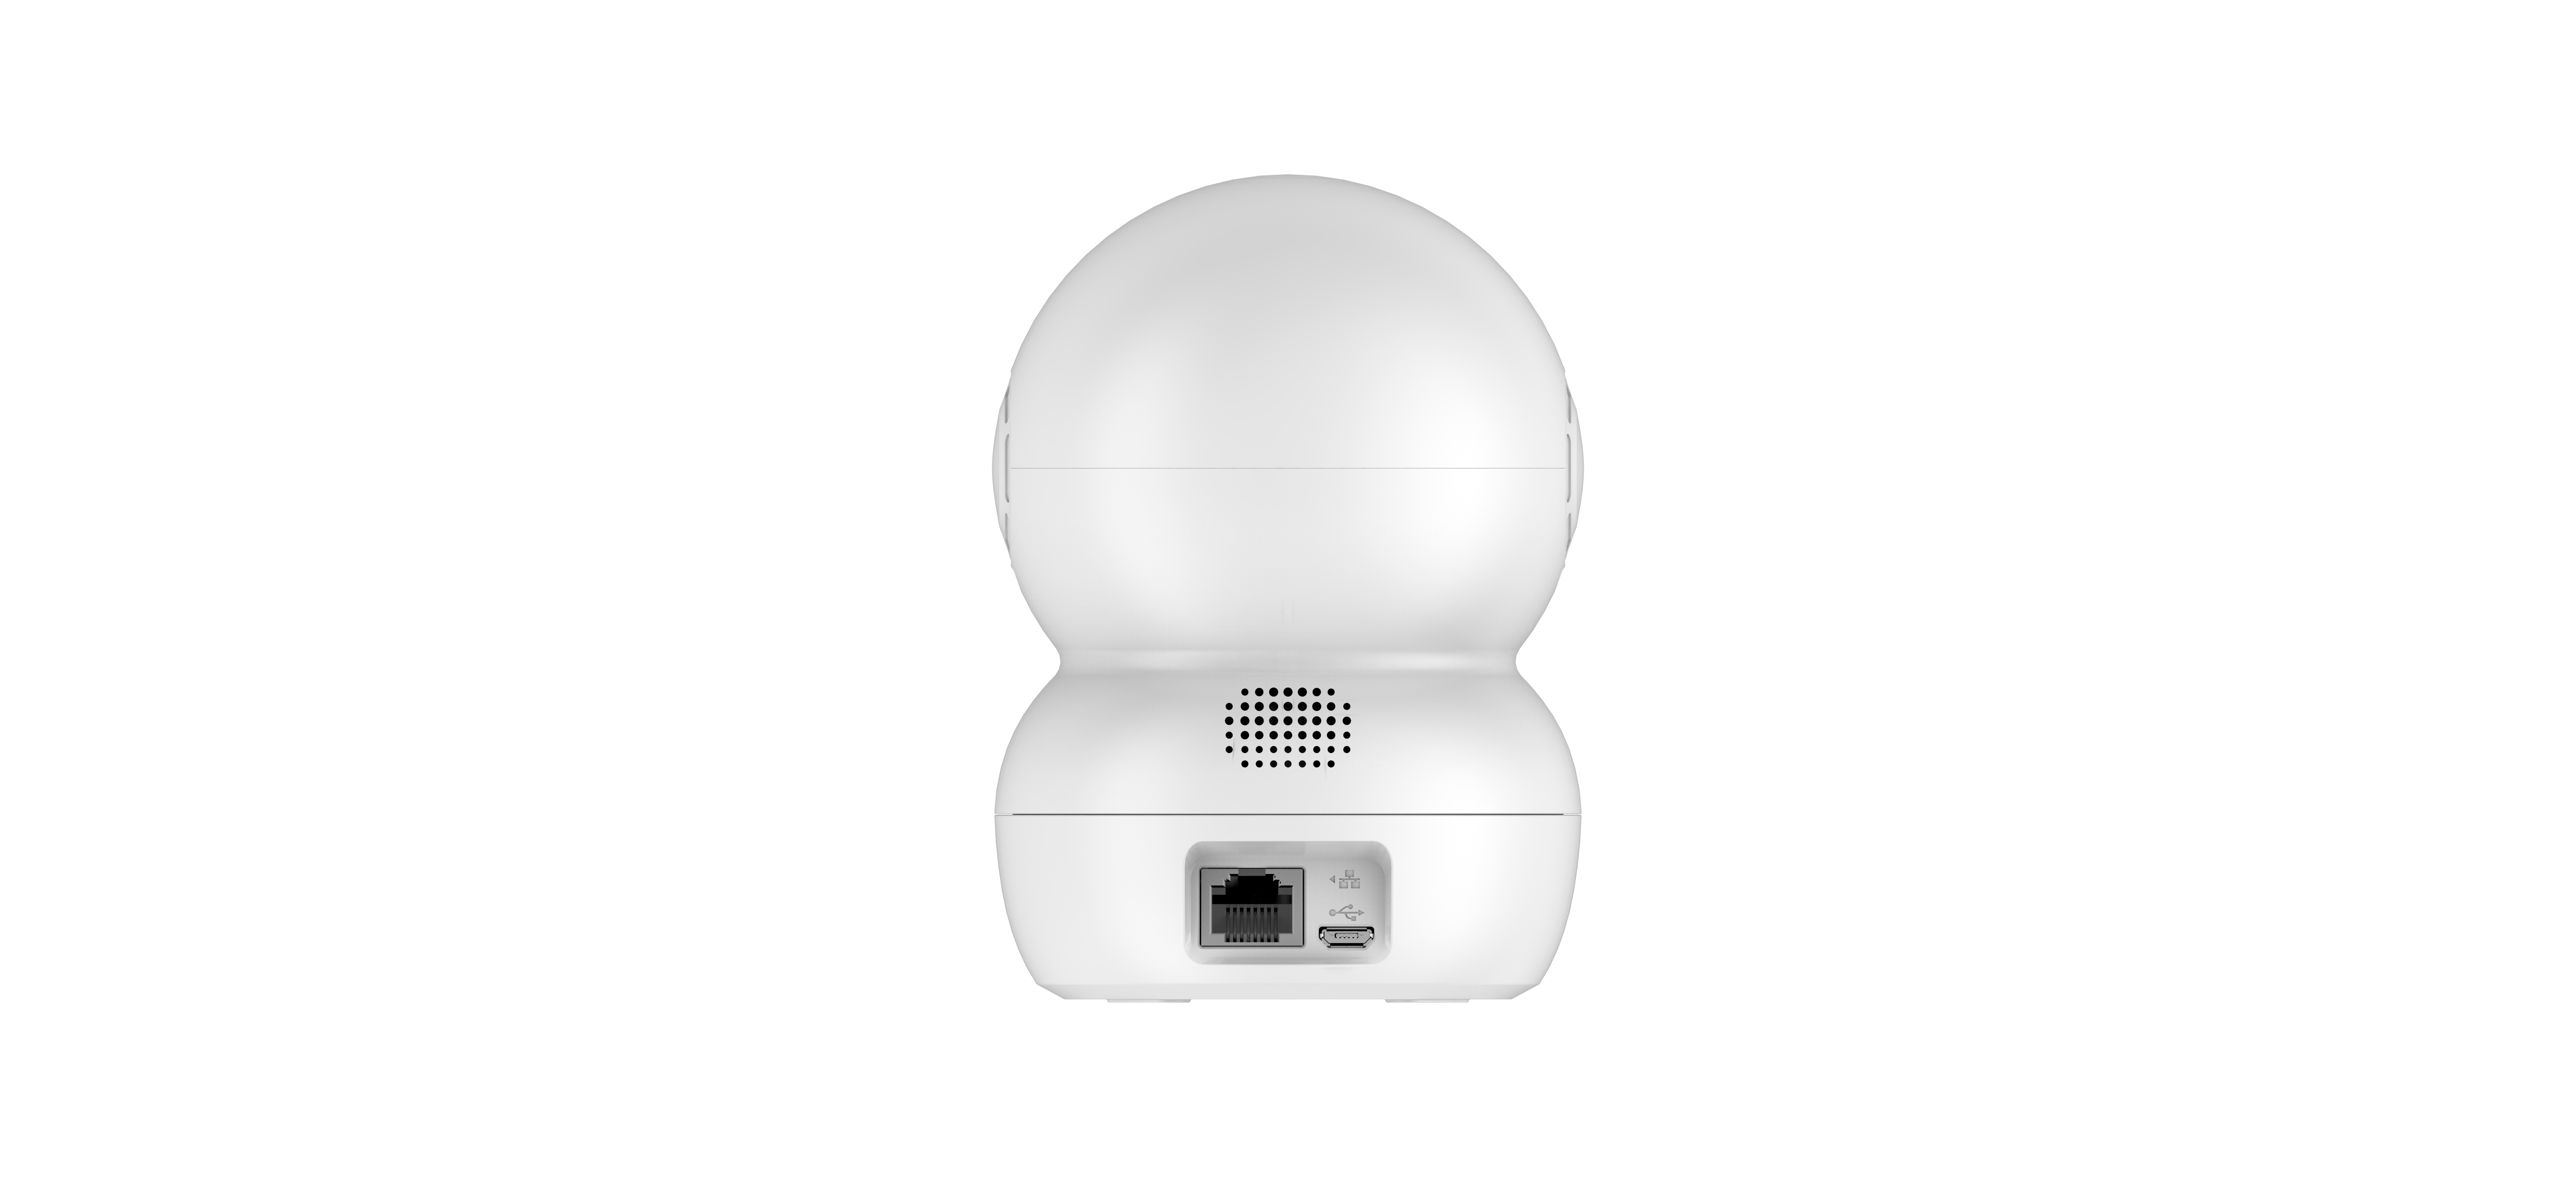 Все Поворотная Wi-Fi камера 2мп, с двусторонней аудиосвязью EZVIZ TY2 видеонаблюдения в магазине Vidos Group